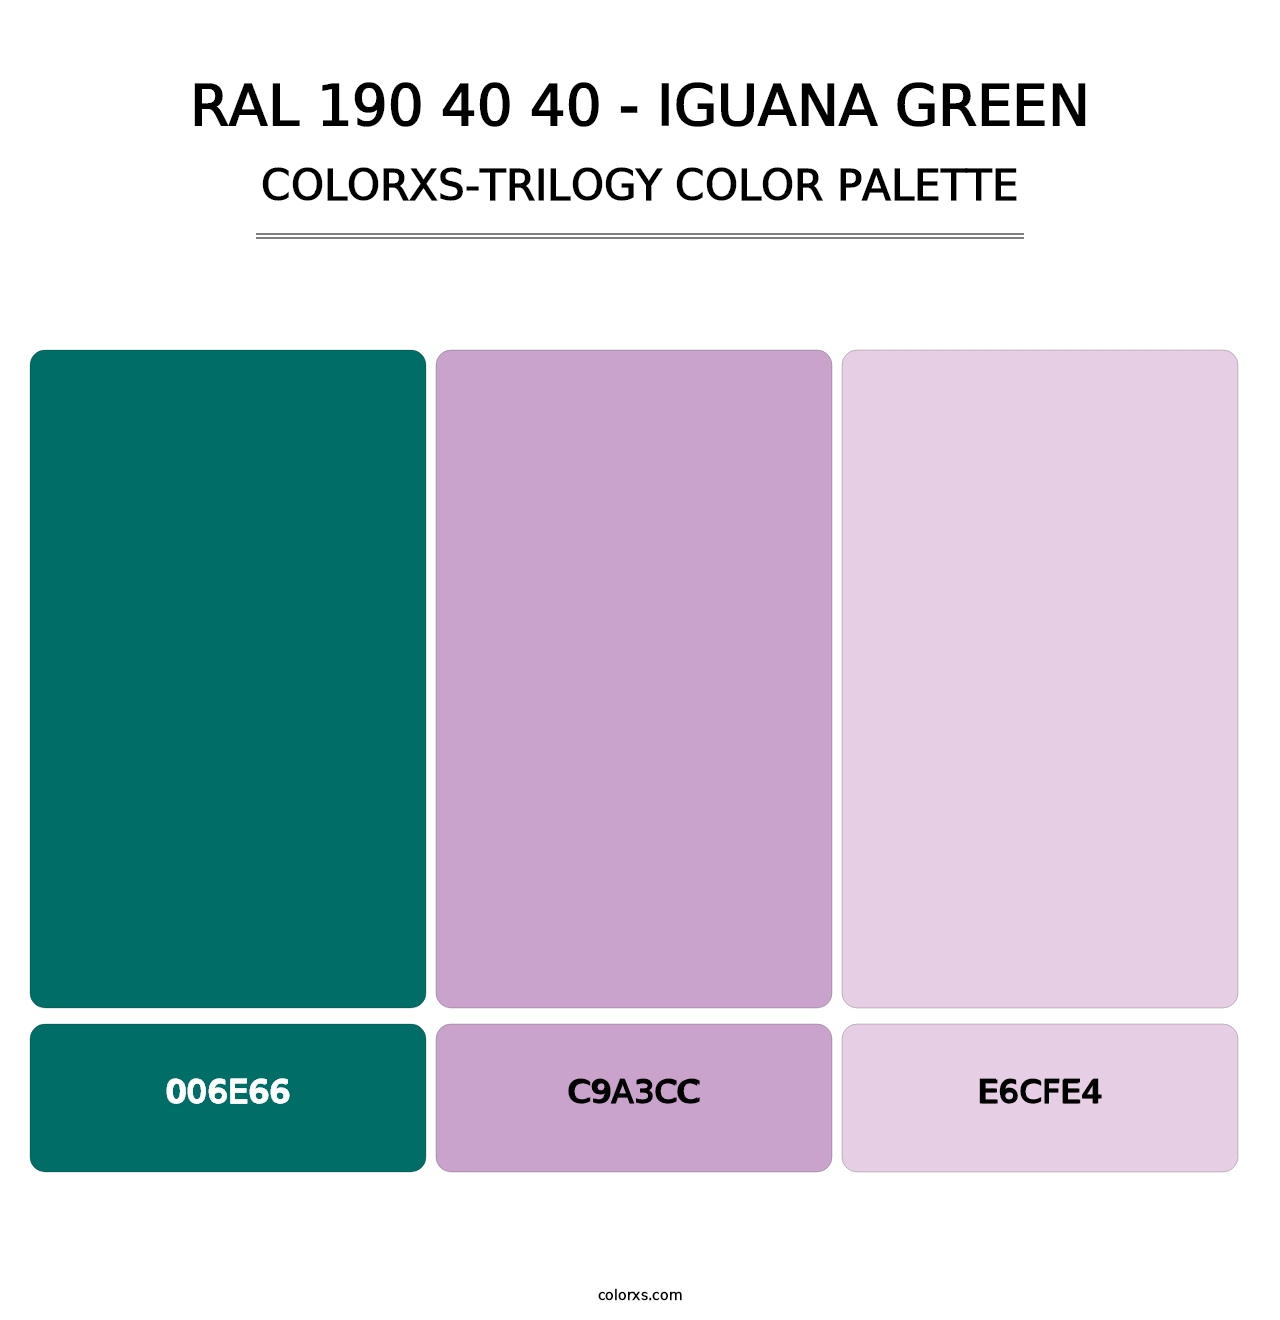 RAL 190 40 40 - Iguana Green - Colorxs Trilogy Palette